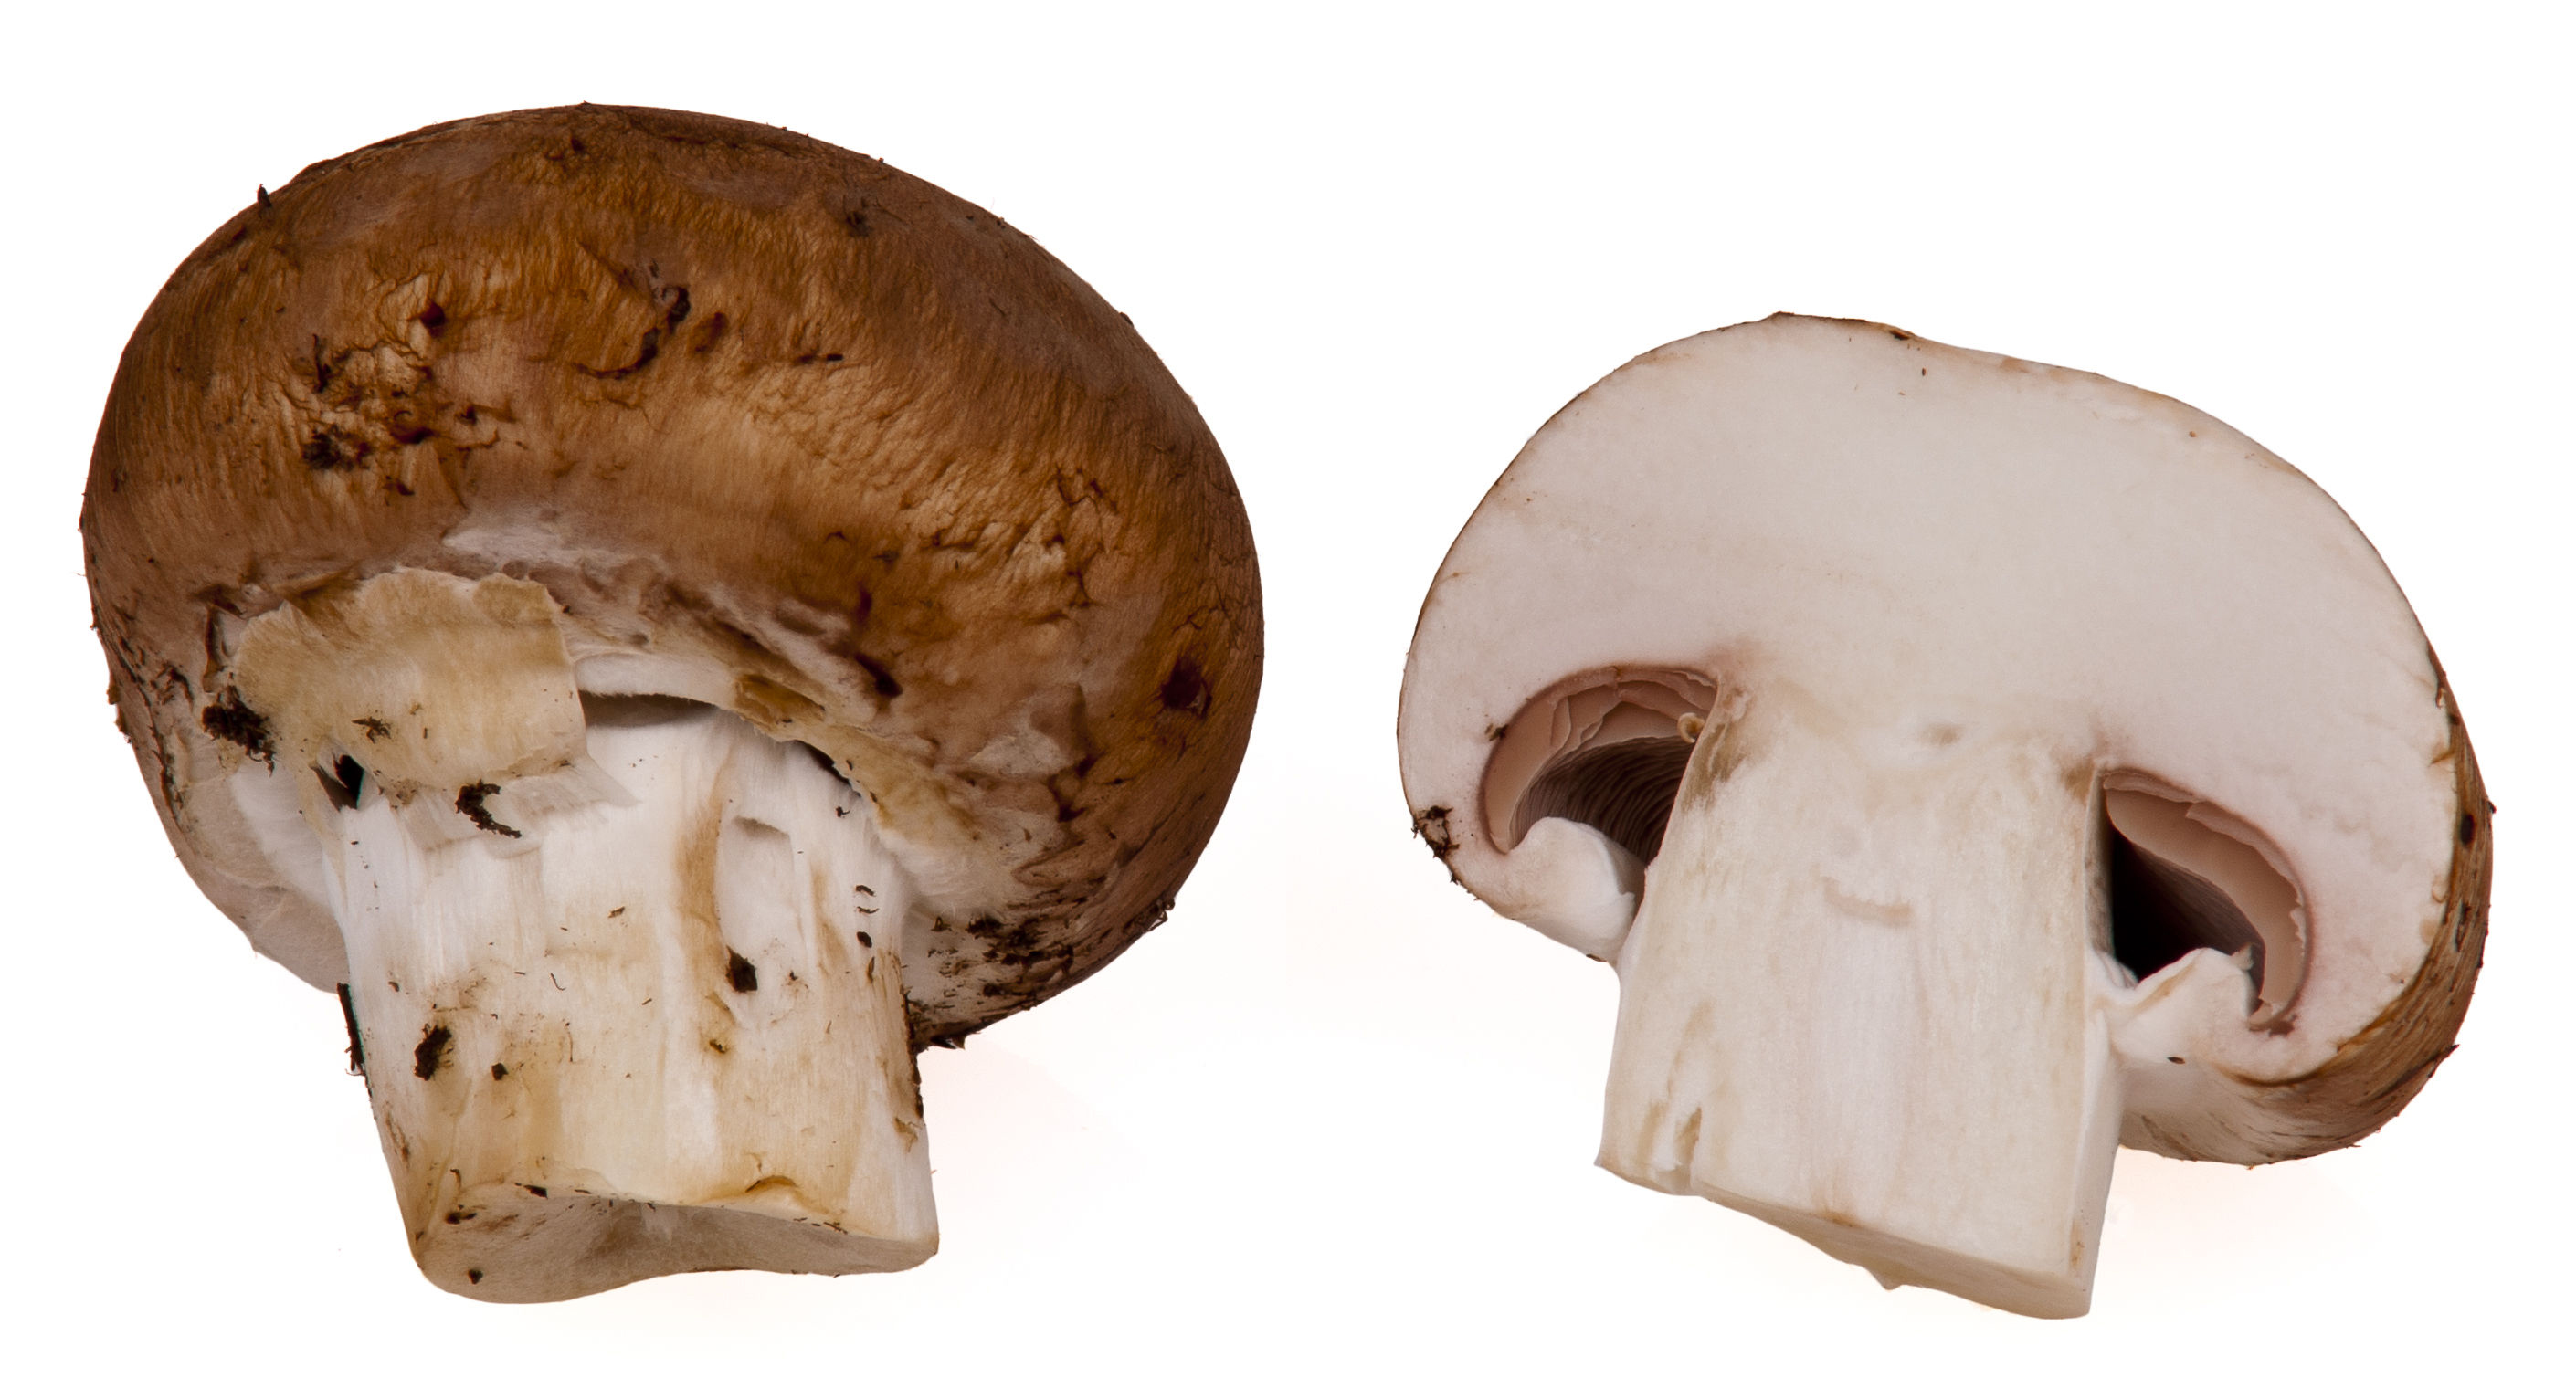 Half-cut-Portobello-mushroom